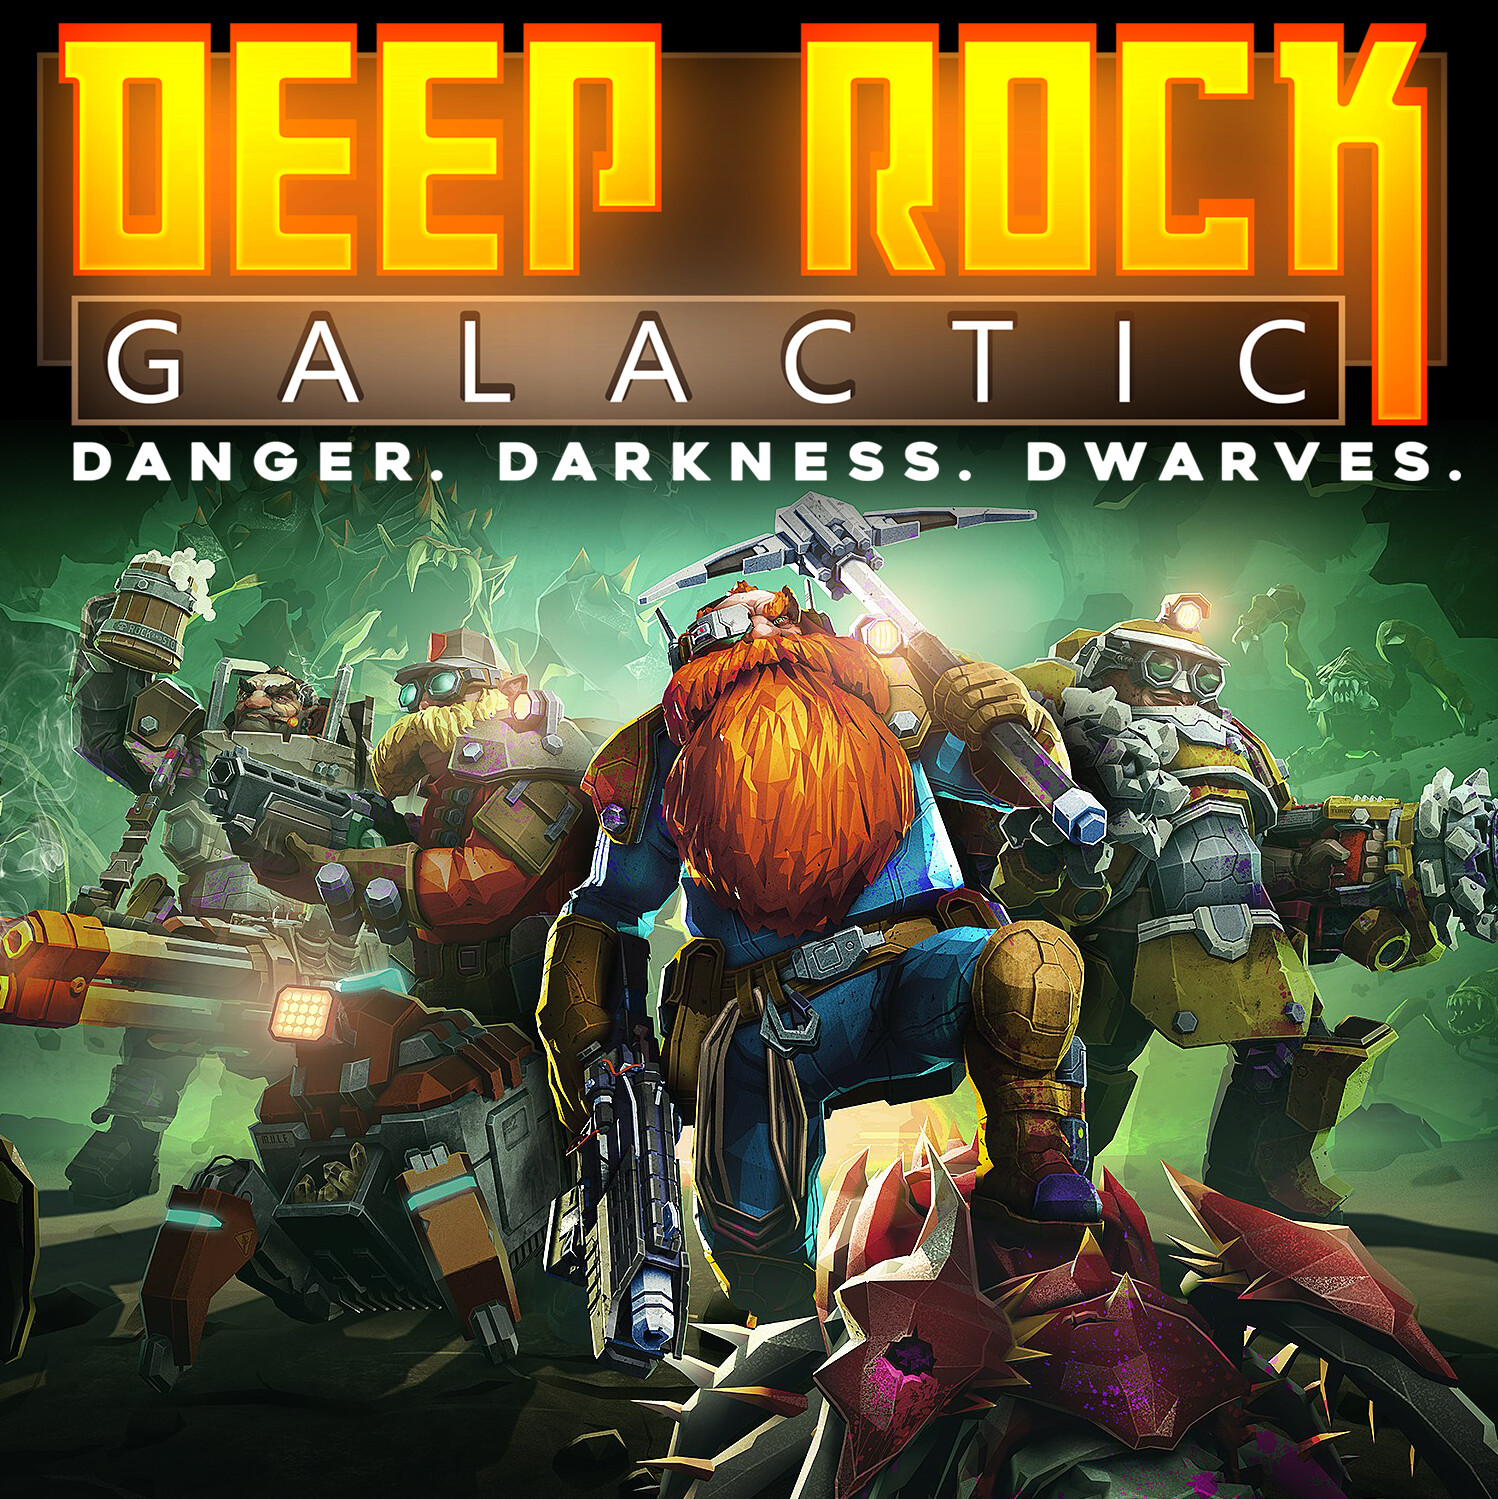 Deep Rock Galactic Windows game - IndieDB